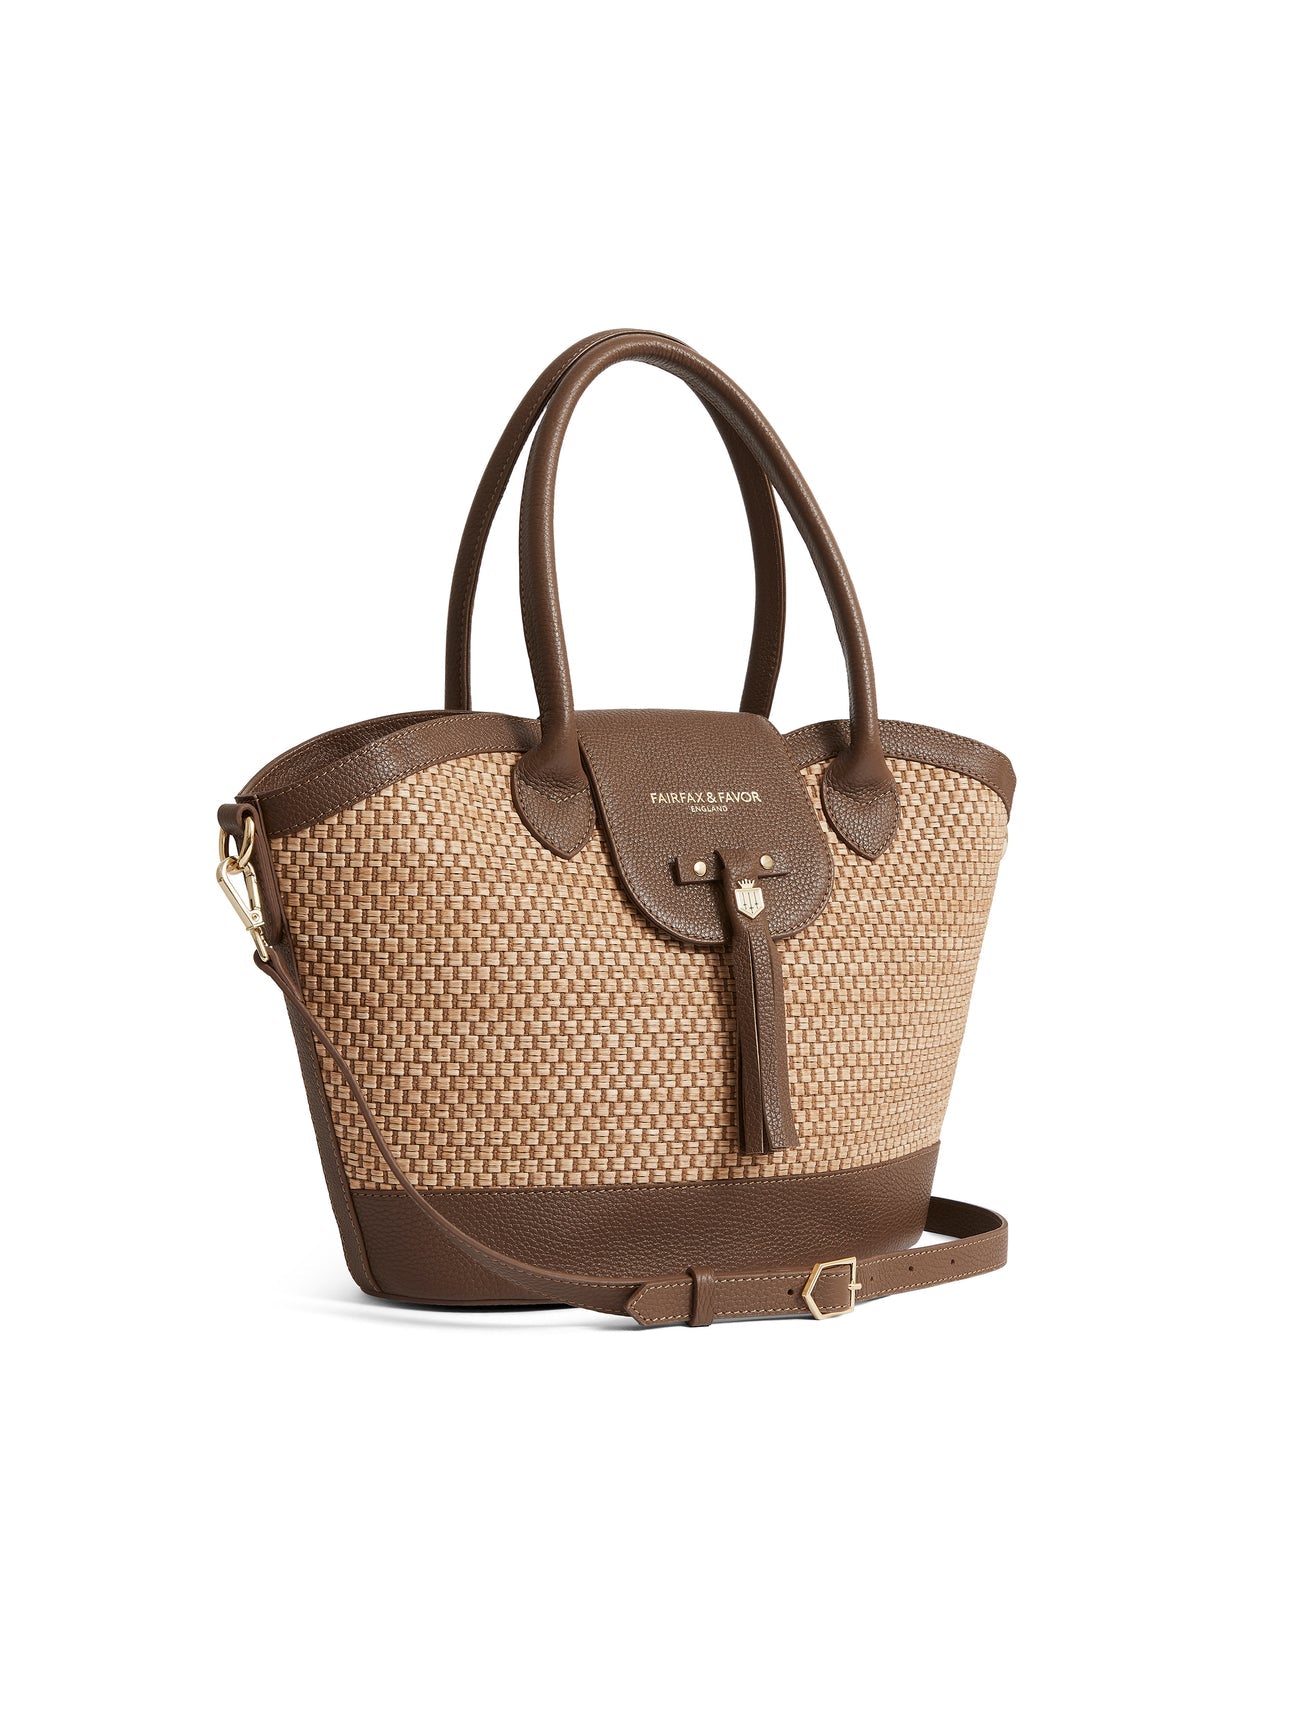 The Windsor Basket Bag -Tan Leather